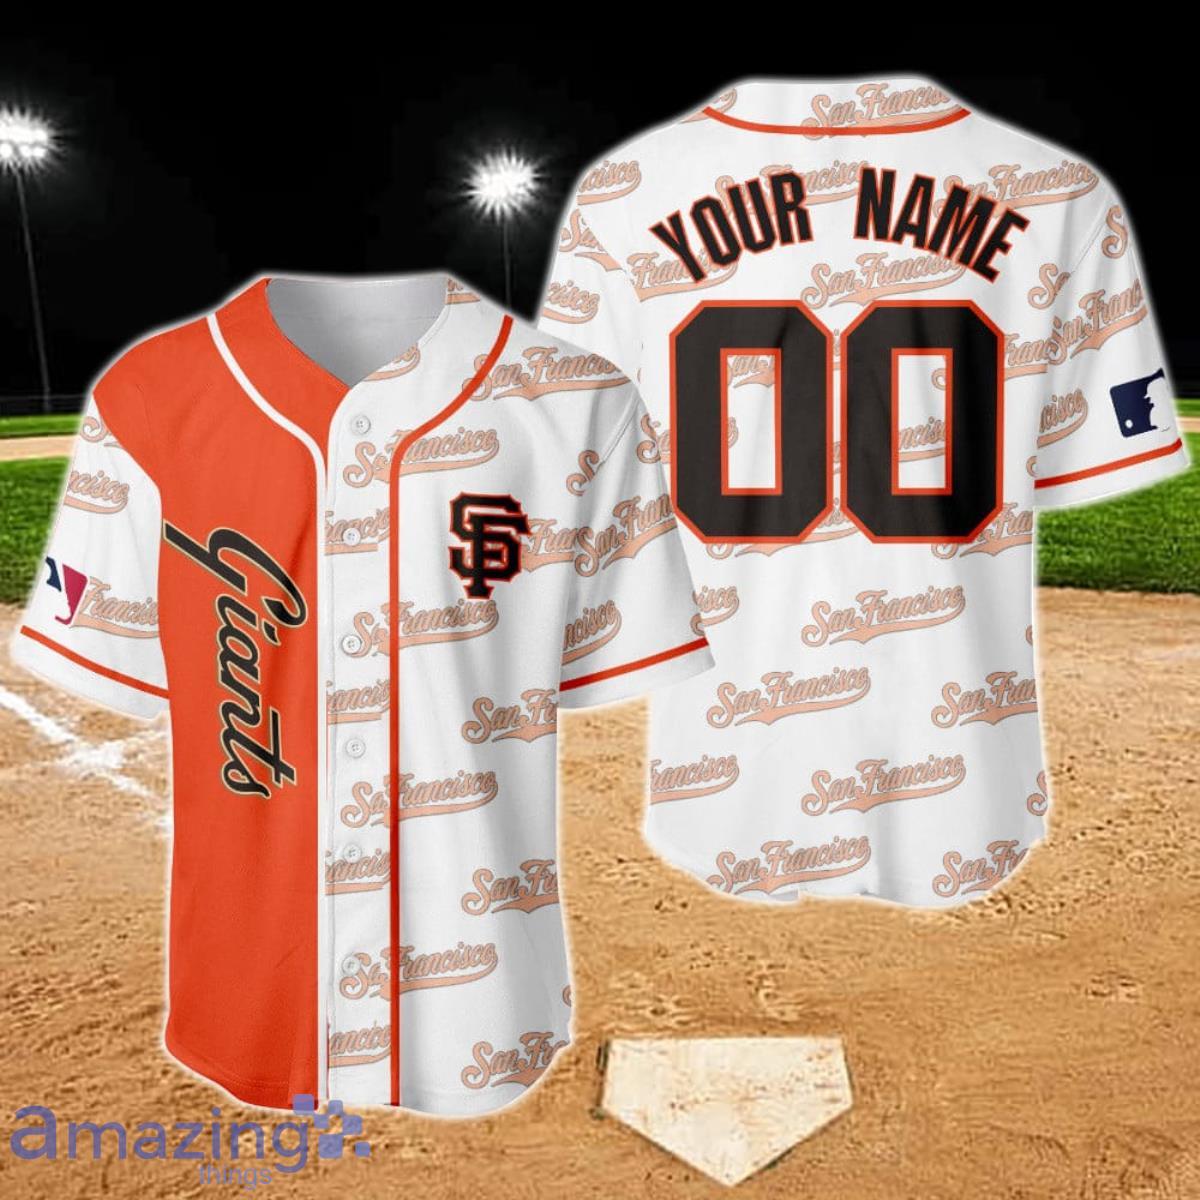 San Francisco Giants Major League Baseball Custom Name Baseball Jersey